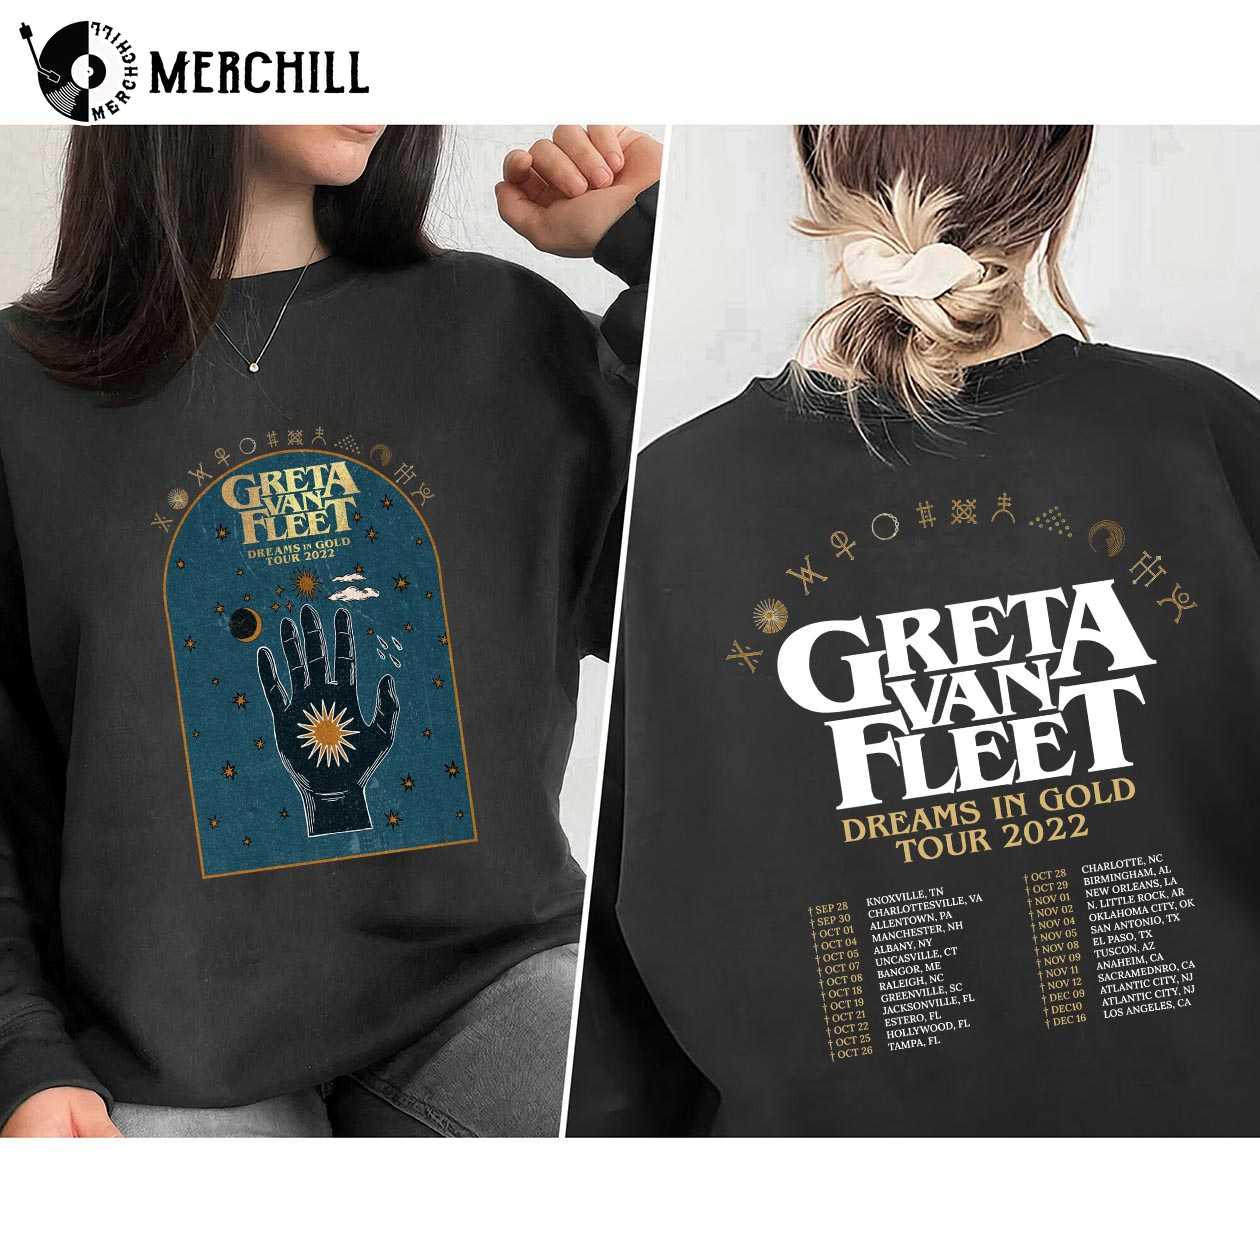 Greta Van Fleet tour merchandise 2022 